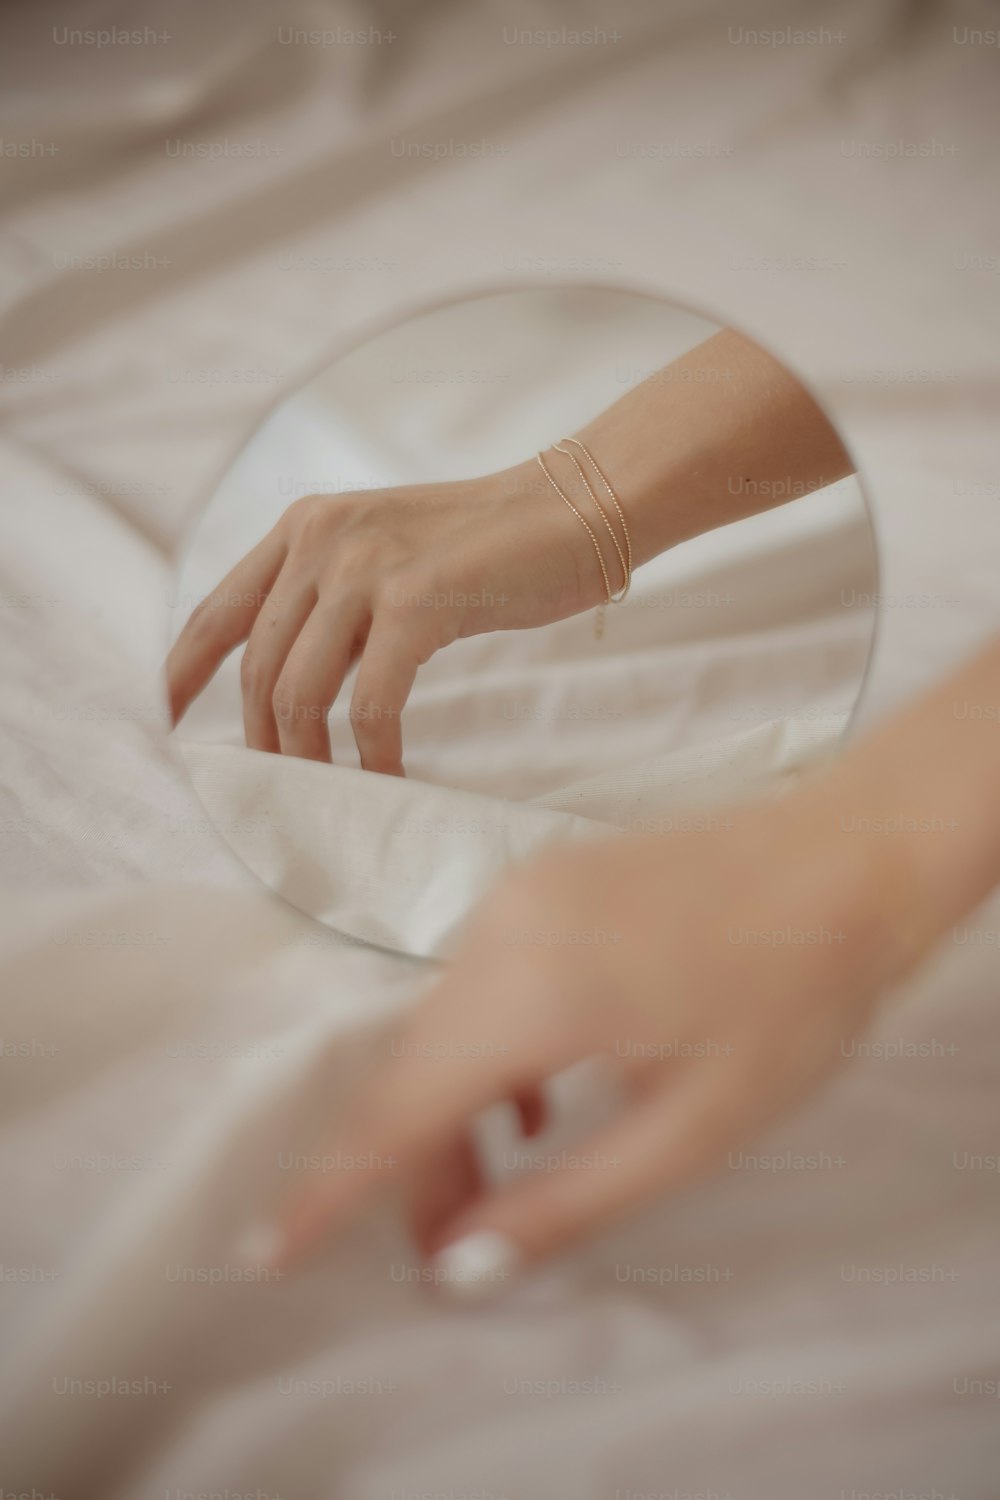 la main d’une personne touchant un miroir sur un lit